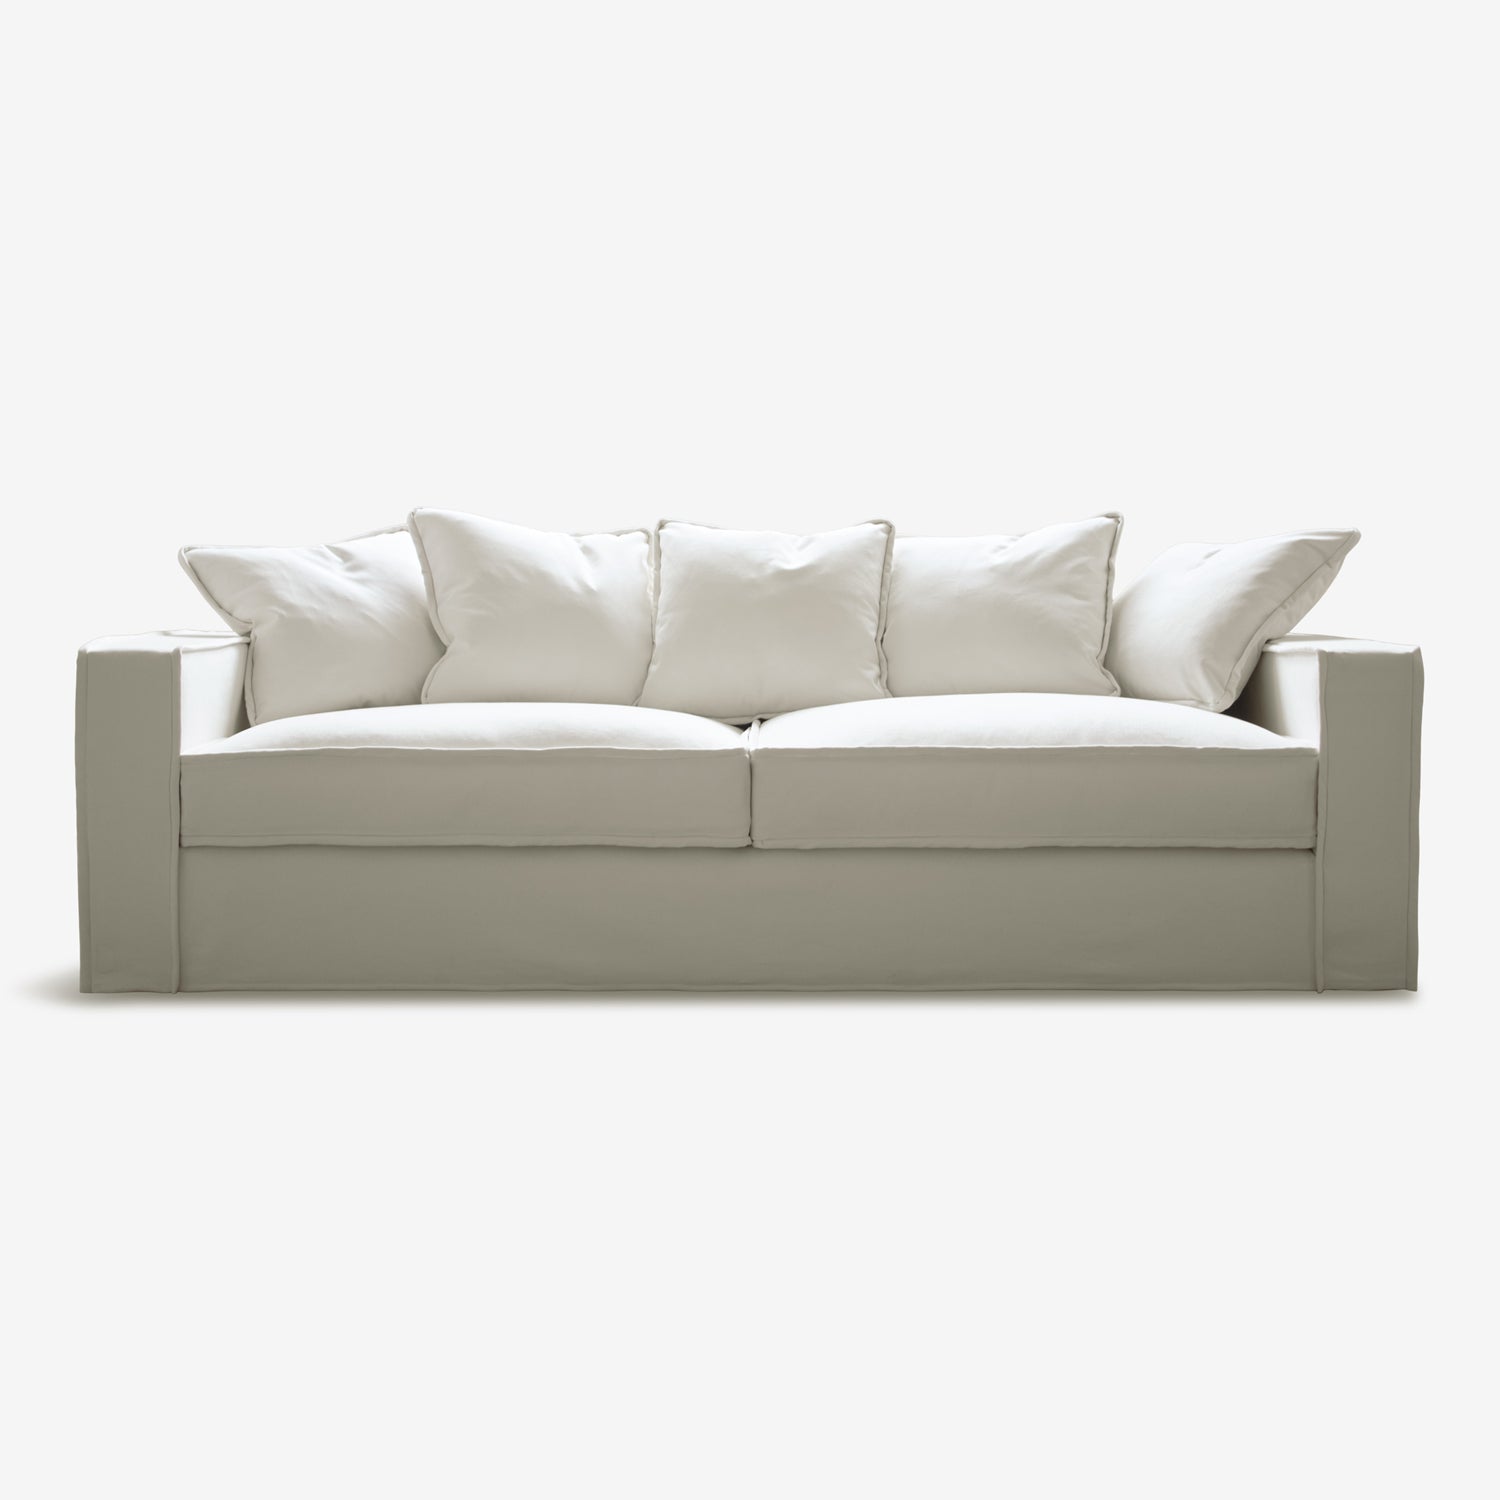 Rafaella 3-Seater Sofa: Luxurious Comfort. Cream white upholstery.